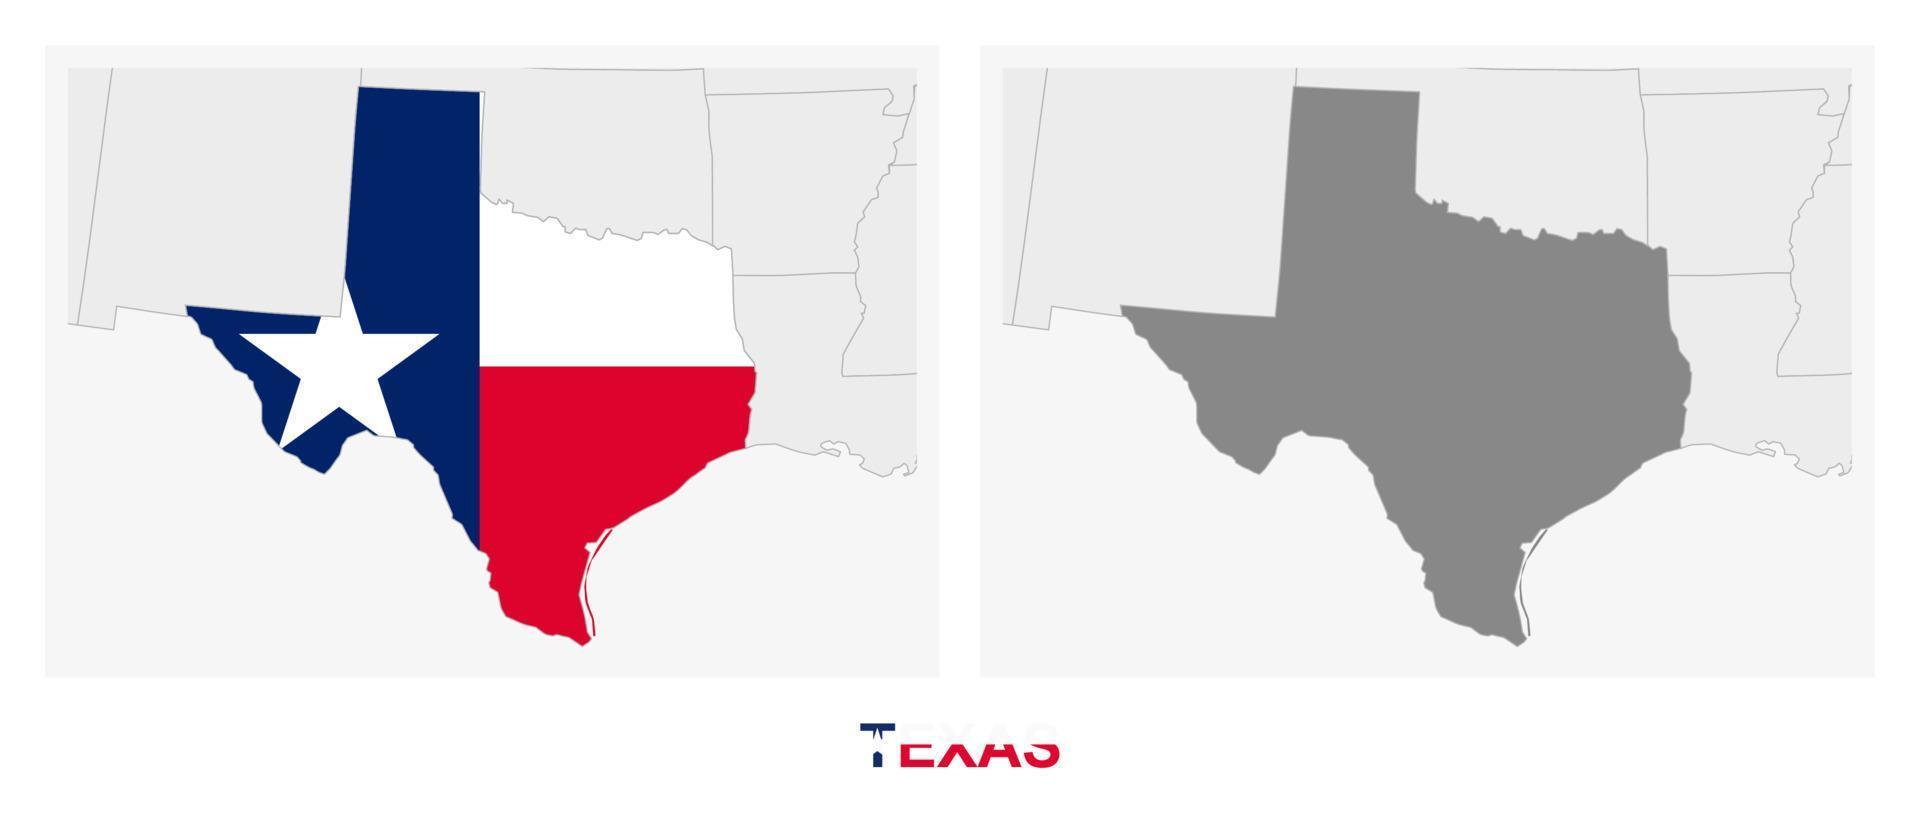 zwei versionen der karte des us-staates texas, mit der flagge von texas und dunkelgrau hervorgehoben. vektor